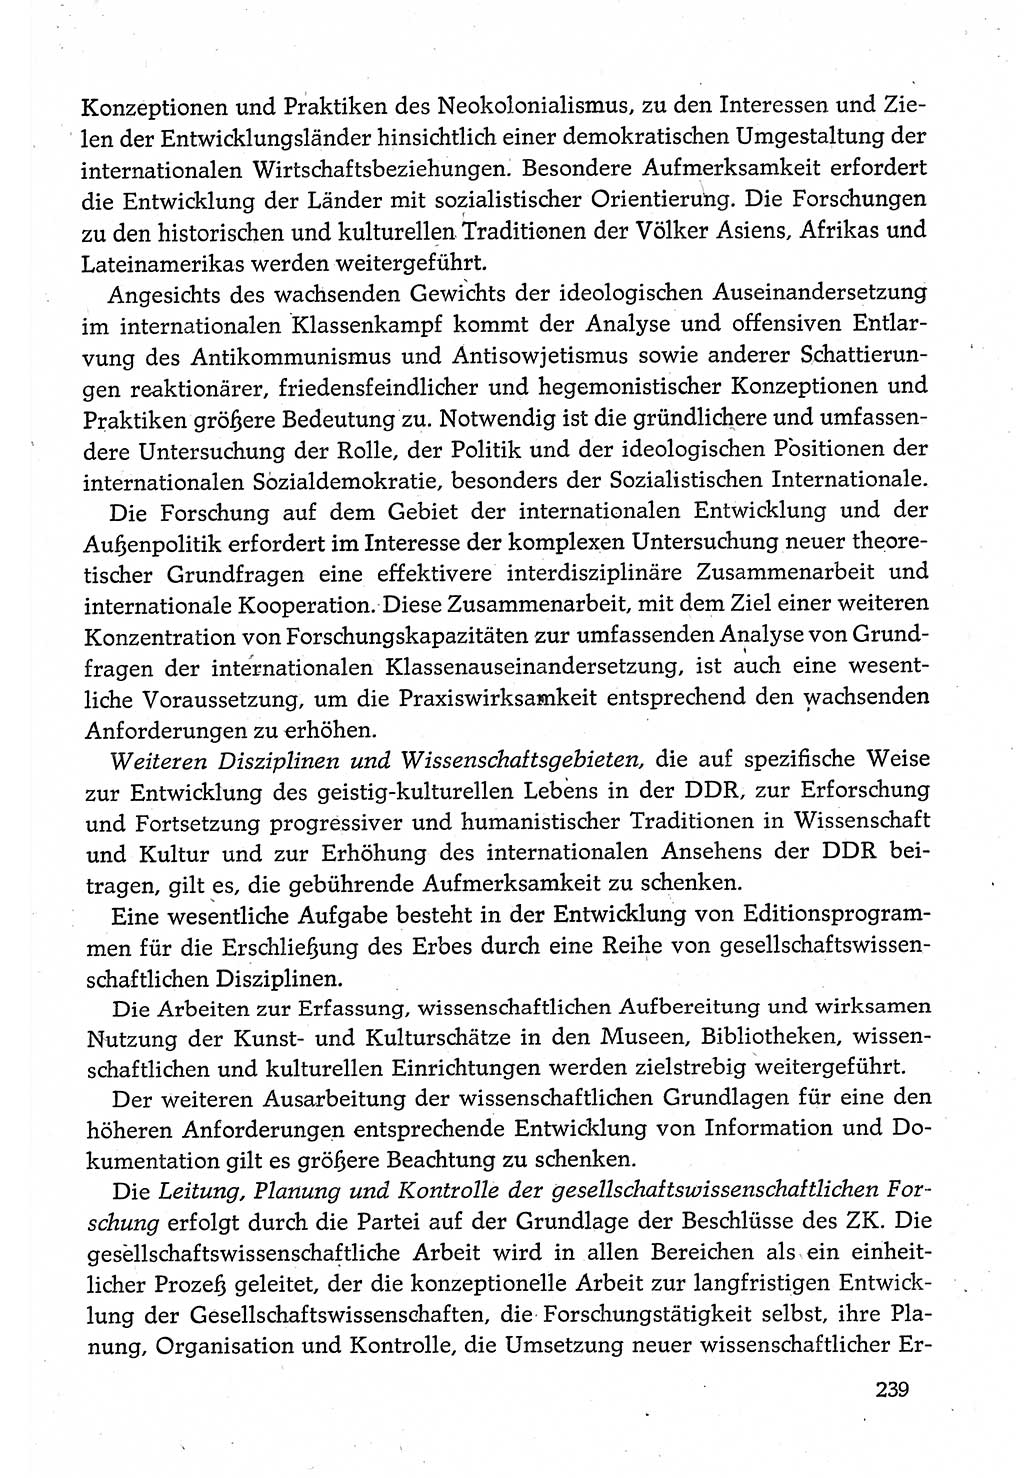 Dokumente der Sozialistischen Einheitspartei Deutschlands (SED) [Deutsche Demokratische Republik (DDR)] 1980-1981, Seite 239 (Dok. SED DDR 1980-1981, S. 239)